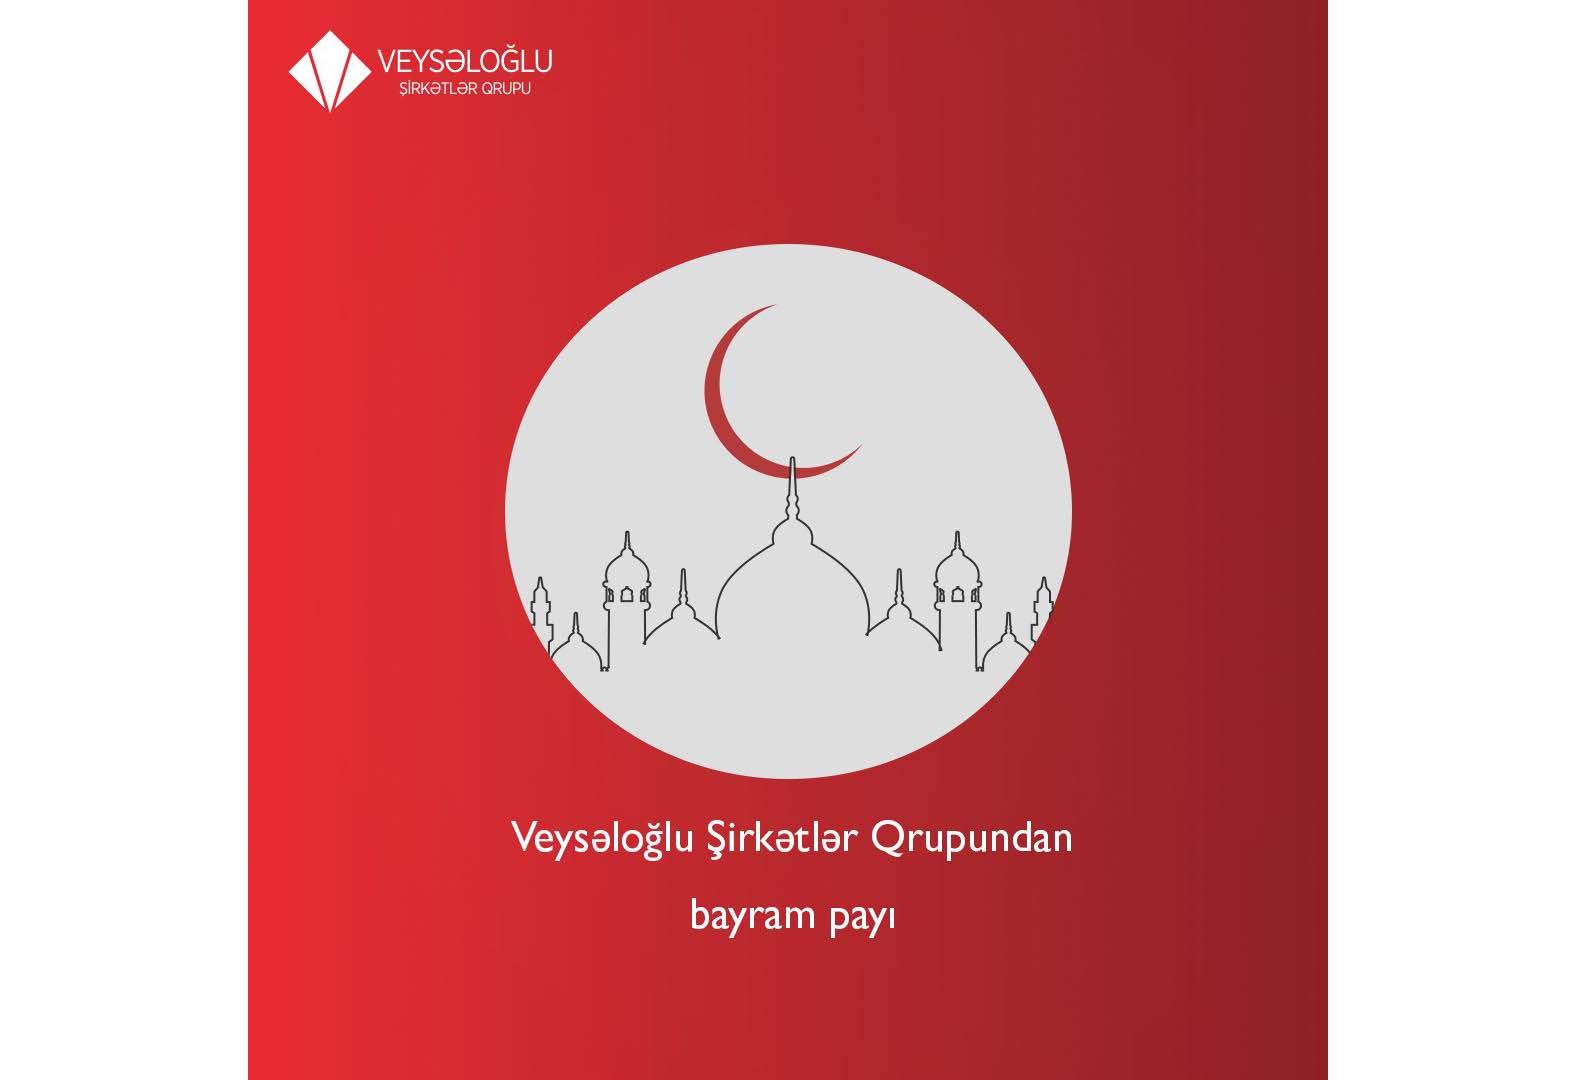 Veysəloğlu Şirkətlər Qrupu 170-dən çox ailəyə bayram sovqatı aparıb (FOTO)